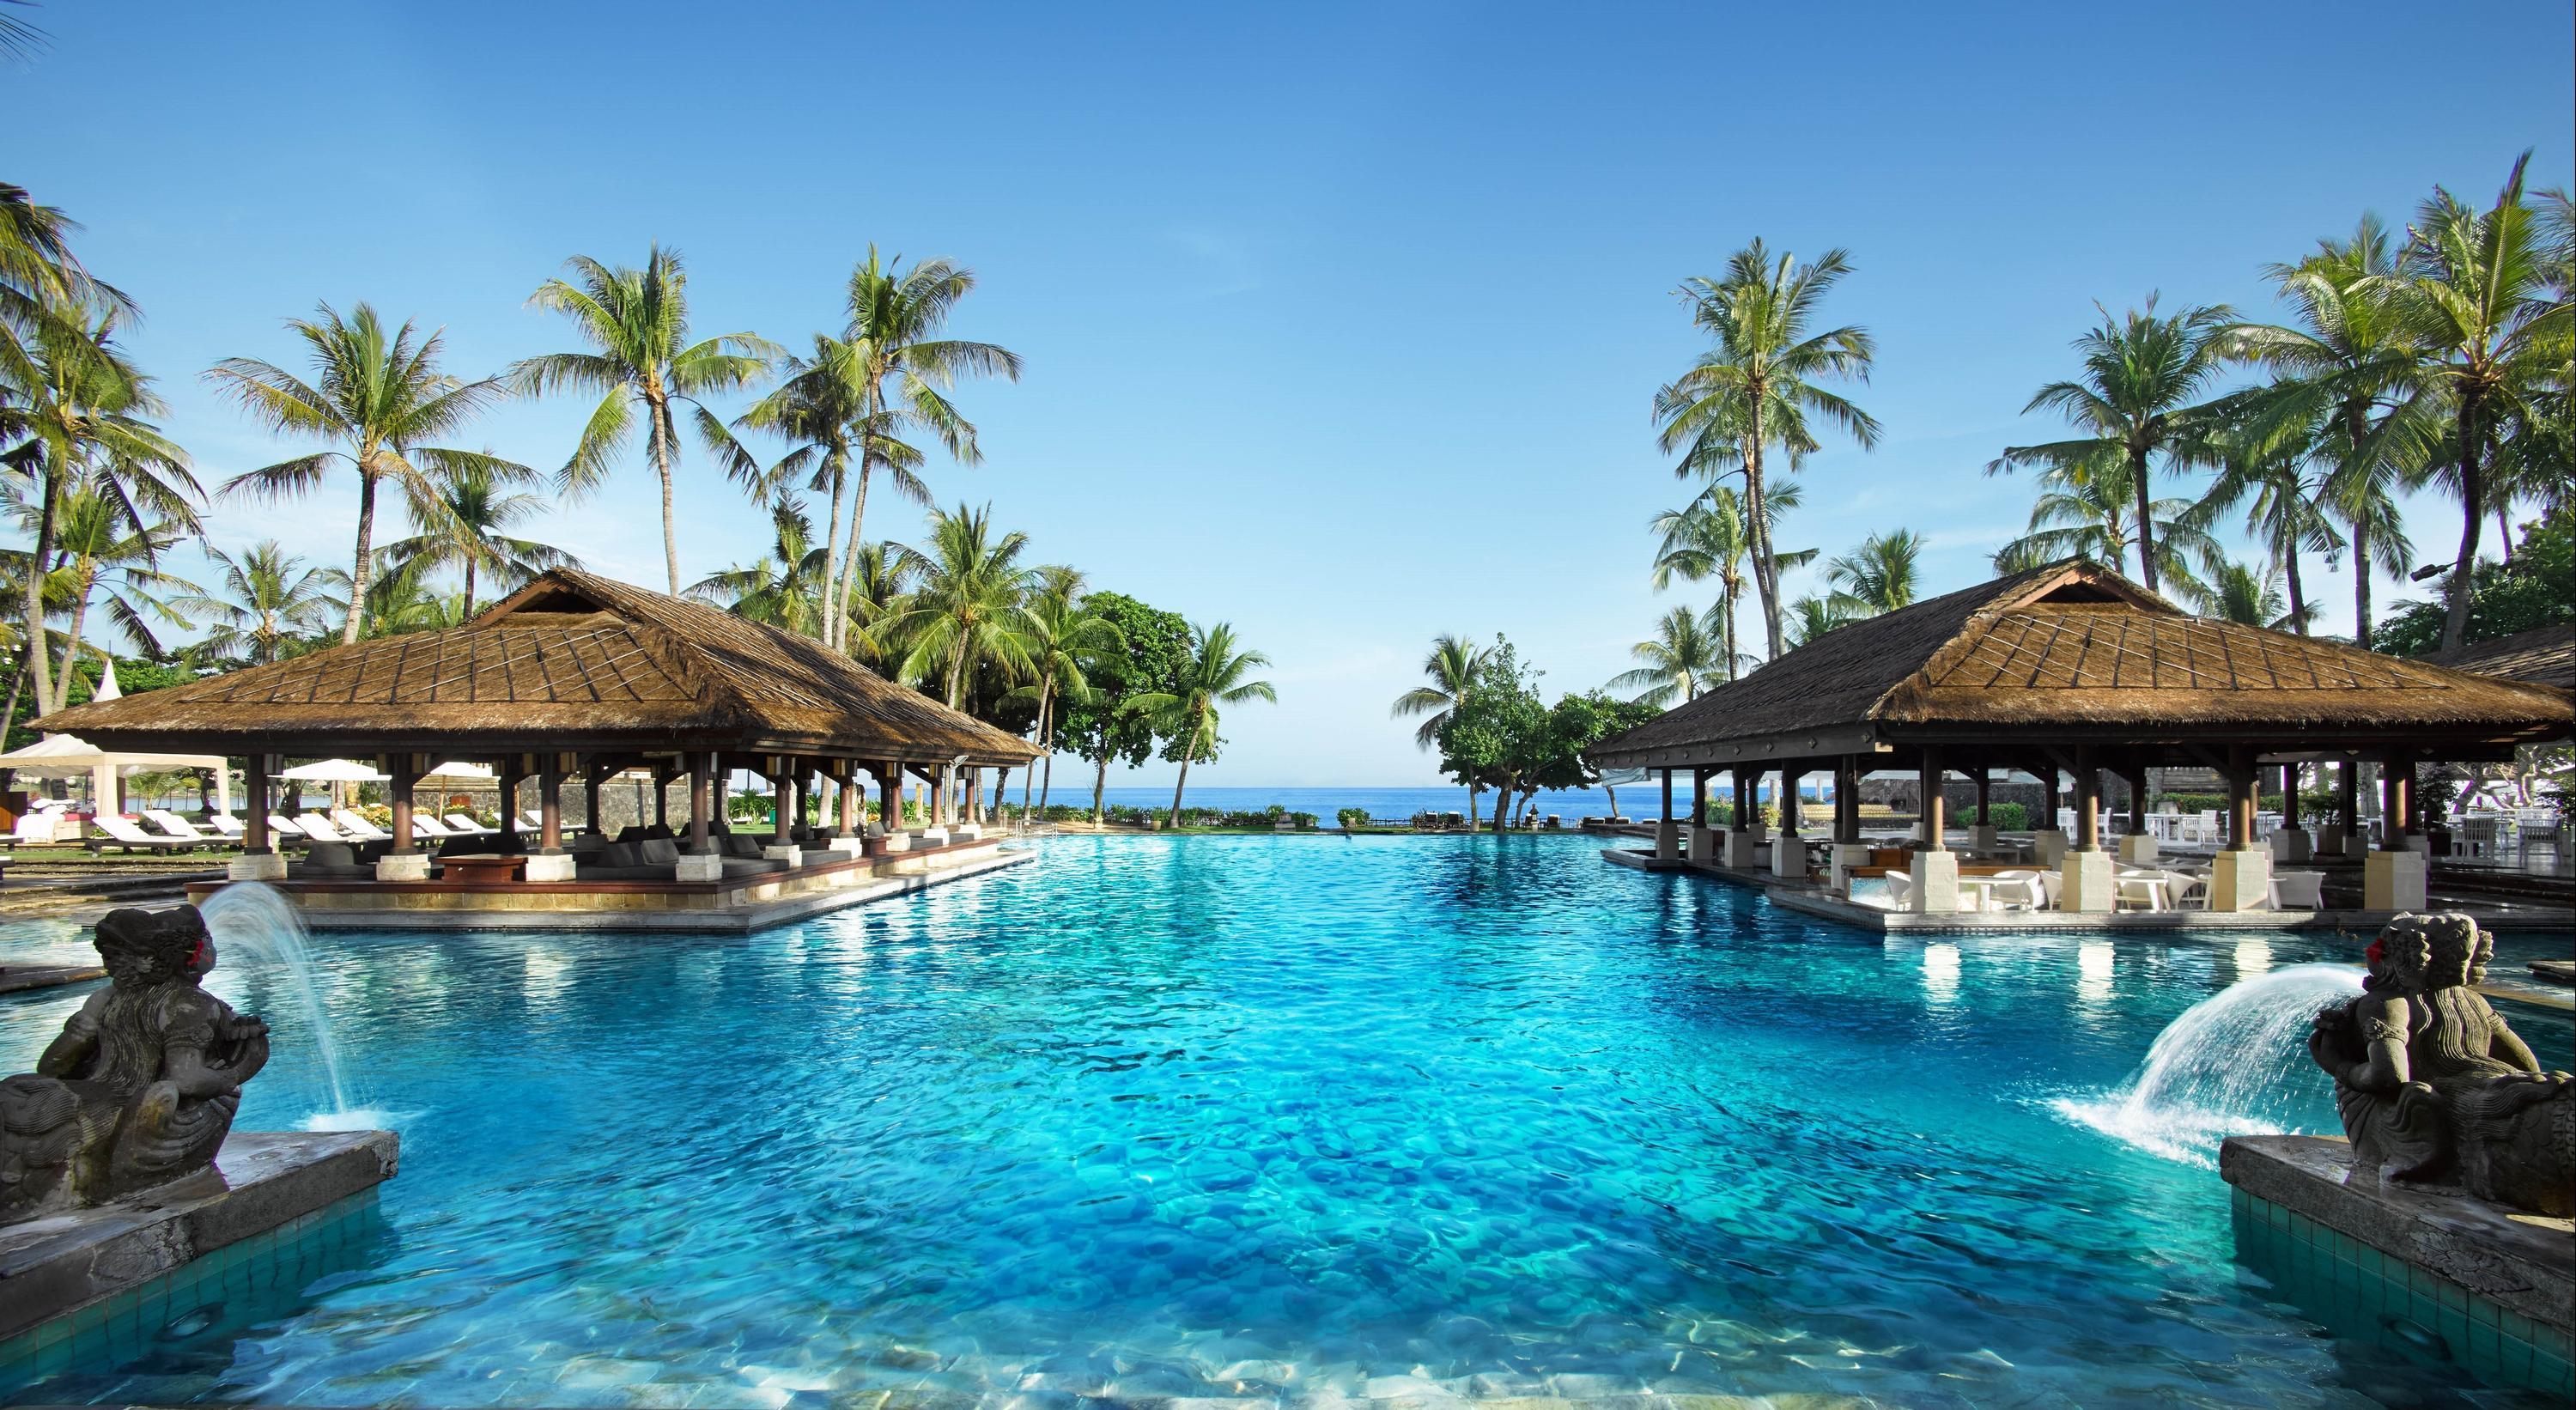 Ofertas, opiniones e imágenes de Intercontinental Bali Resort en South Kuta, Indonesia desde $336.930 | momondo